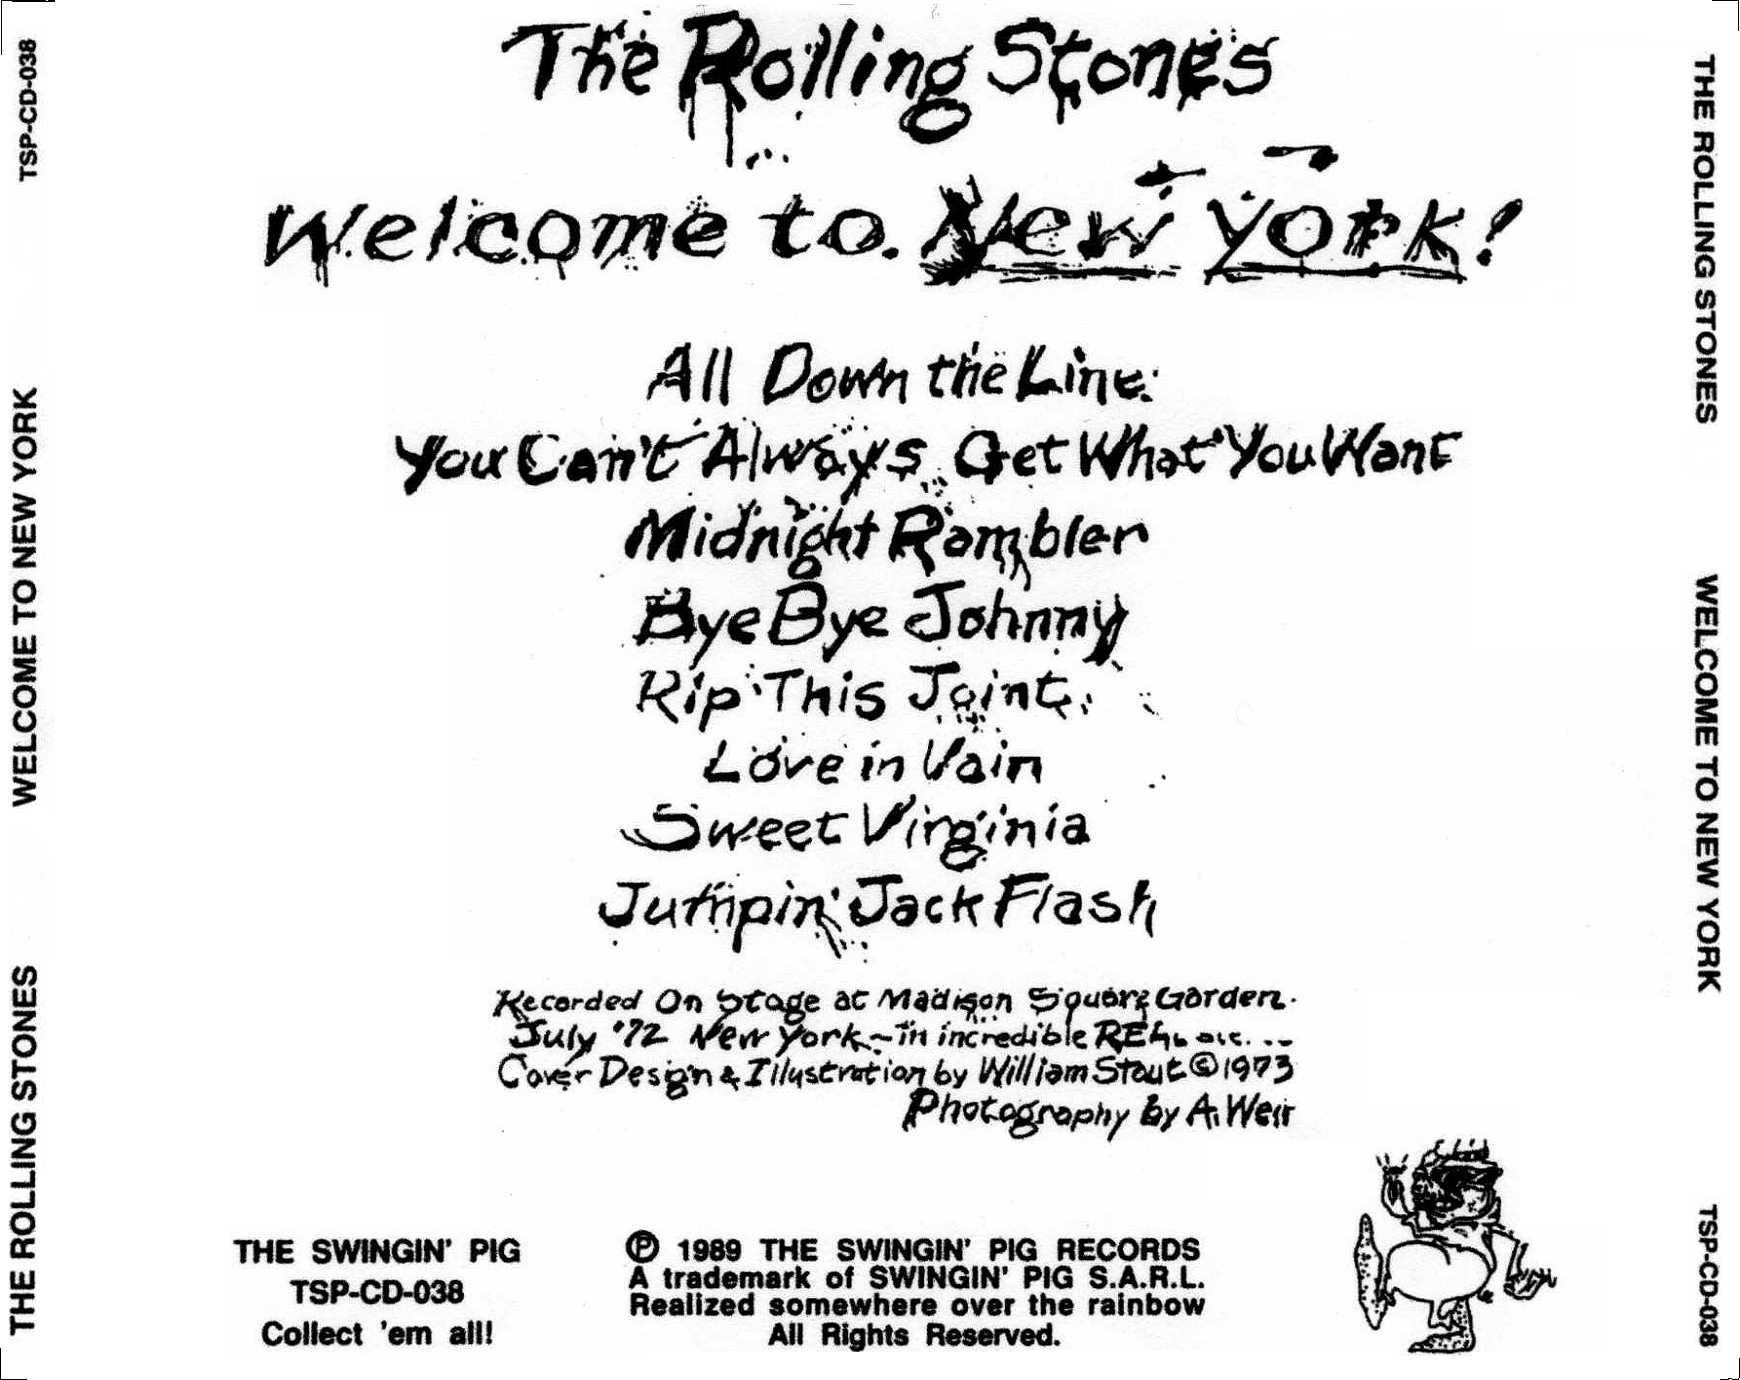 RollingStones1972-07-26WelcomeToNewYork (1).jpg